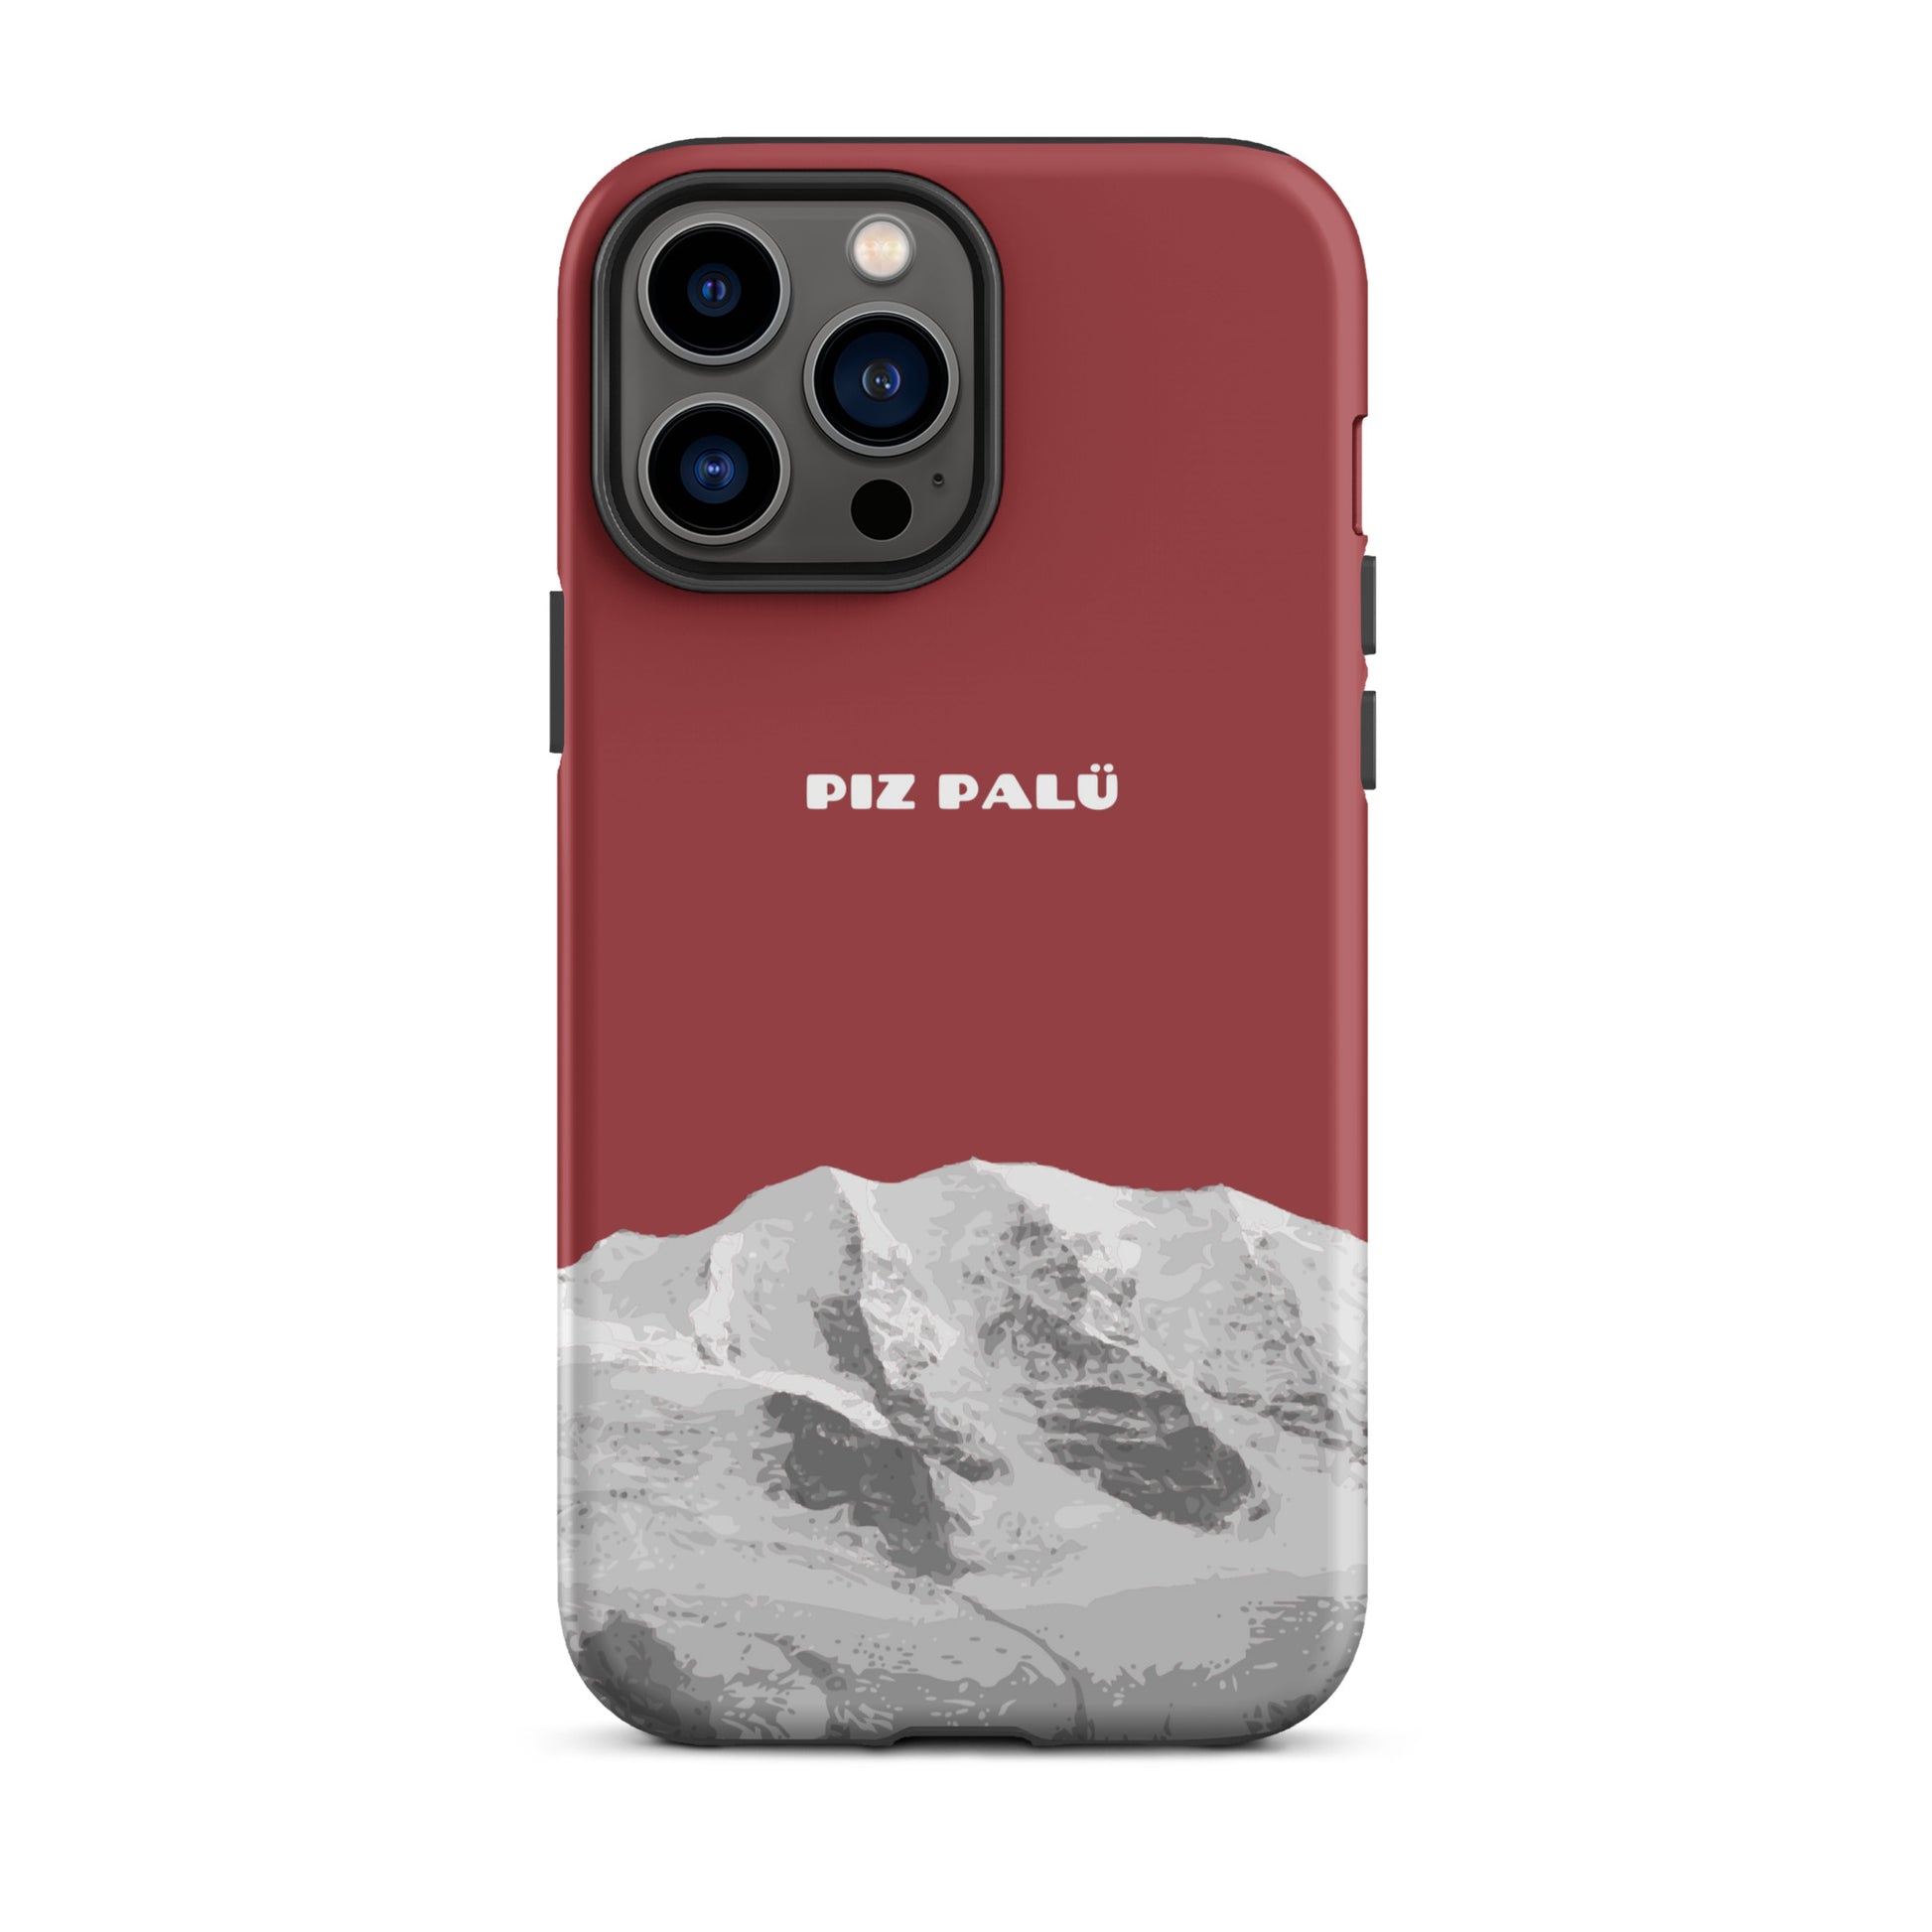 Hülle für das iPhone 13 Pro Max von Apple in der Farbe Pastellviolett, dass den Piz Palü in Graubünden zeigt.